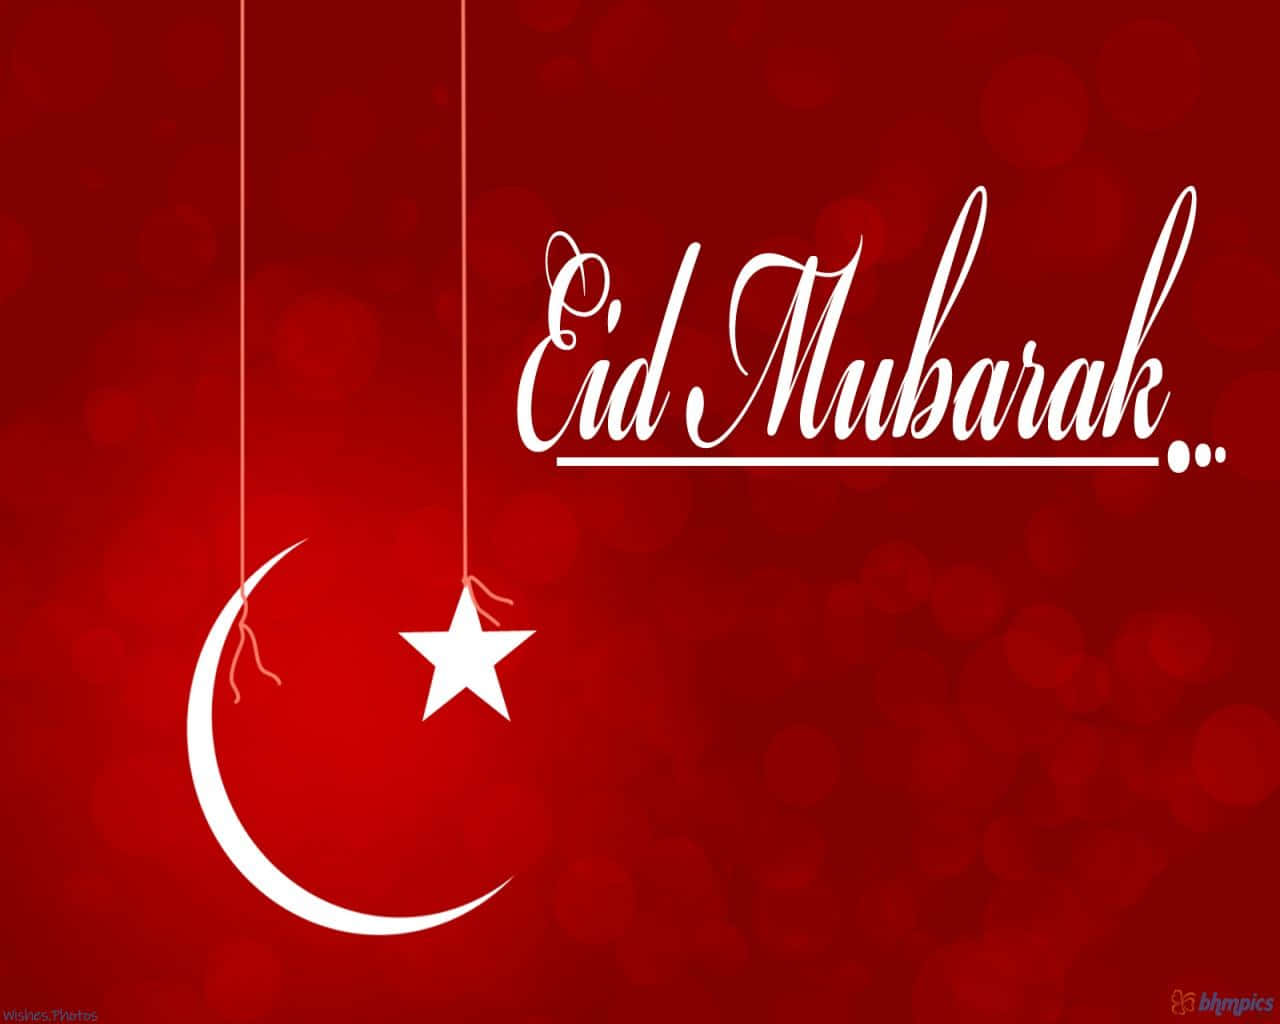 Wishing you a joyous Eid Mubarak!